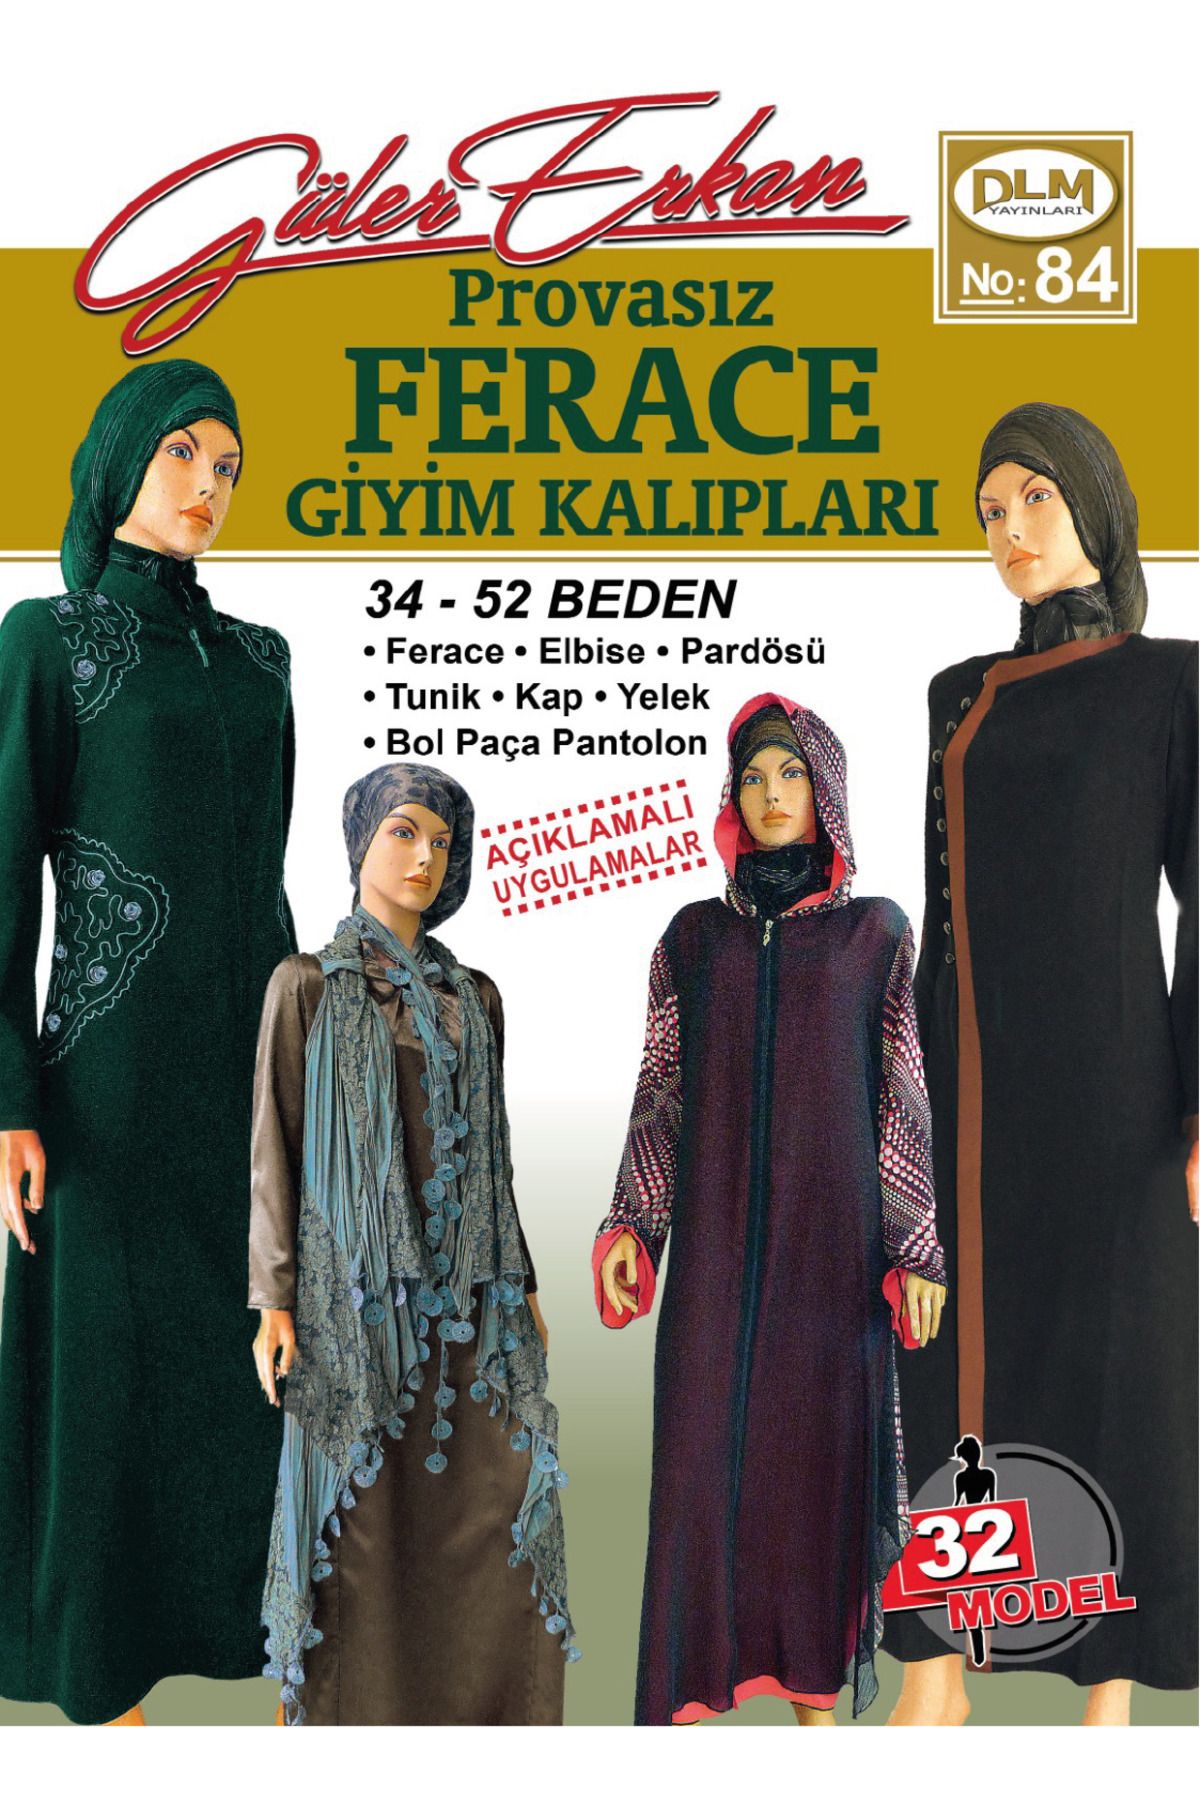 Güler Erkan Provasız Ferace Giyim Kalıpları